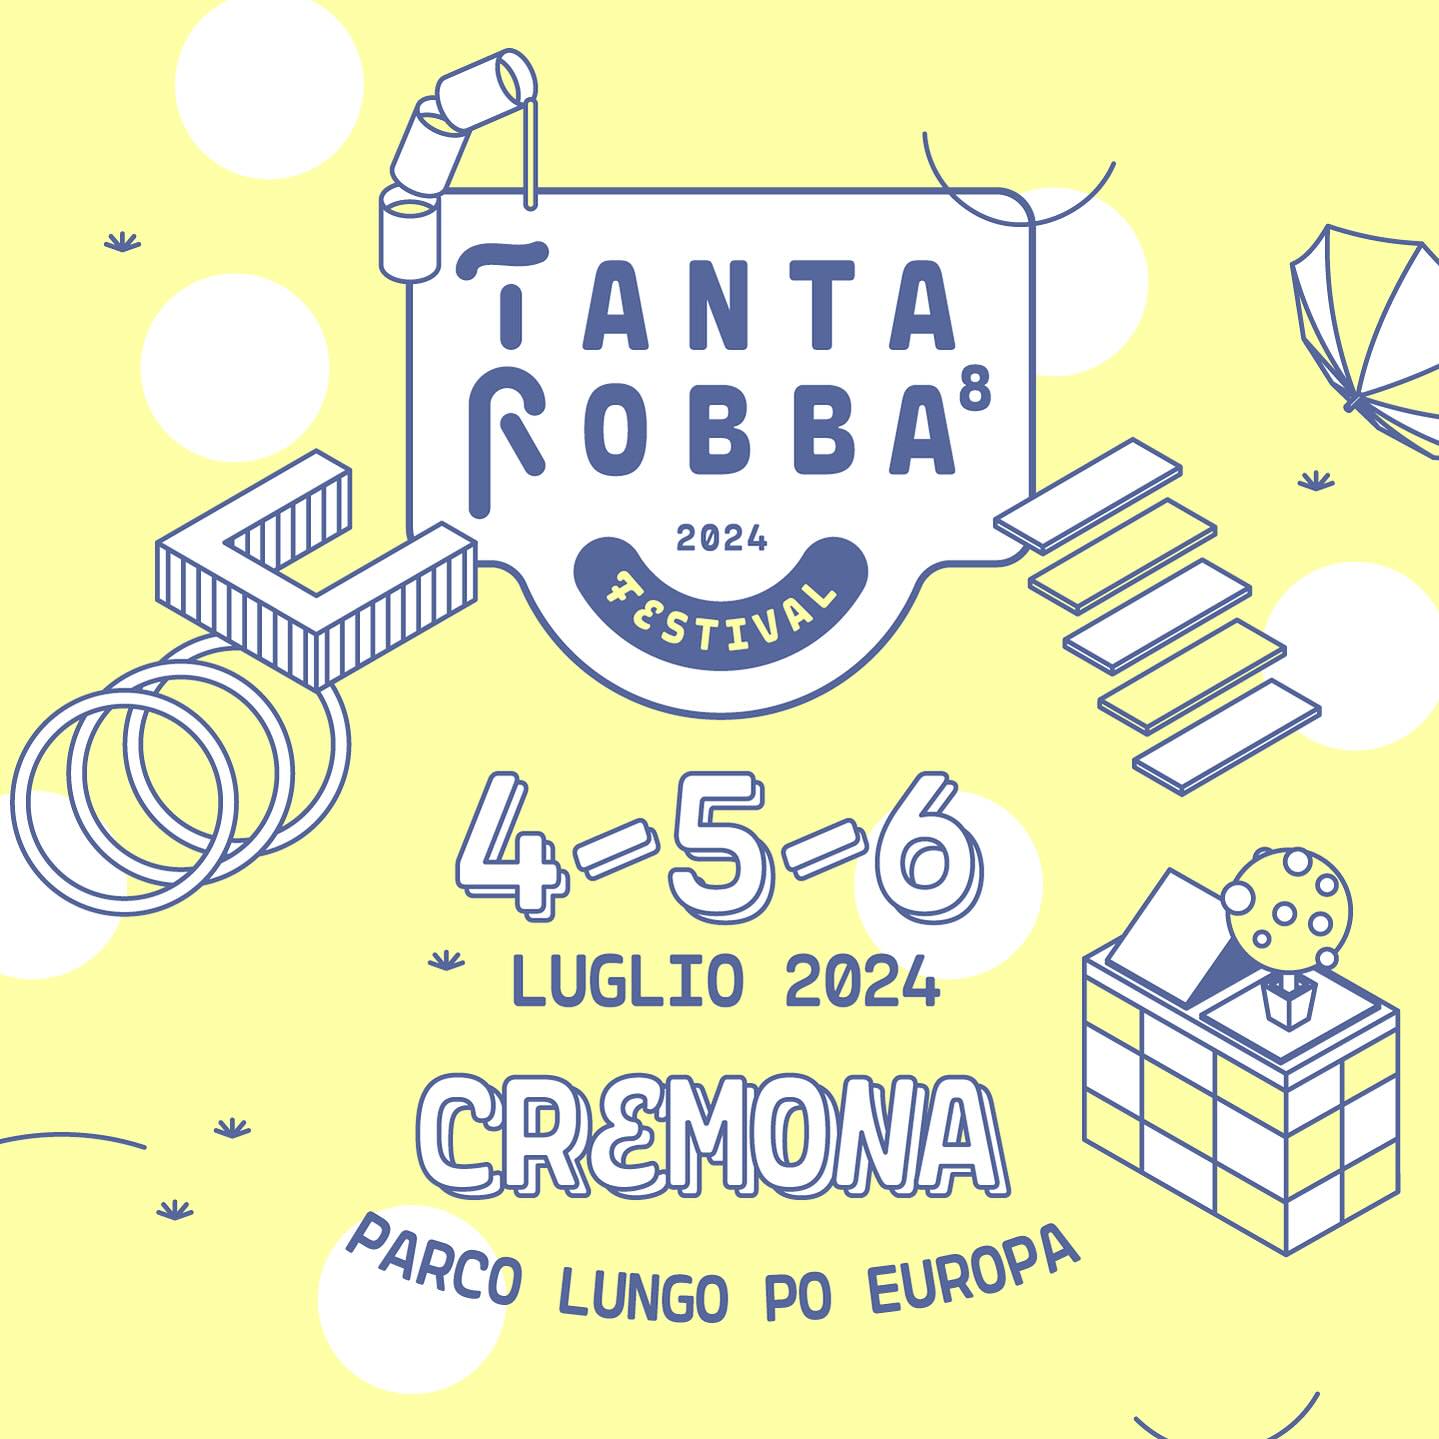 Tanta Robba Festival 2024